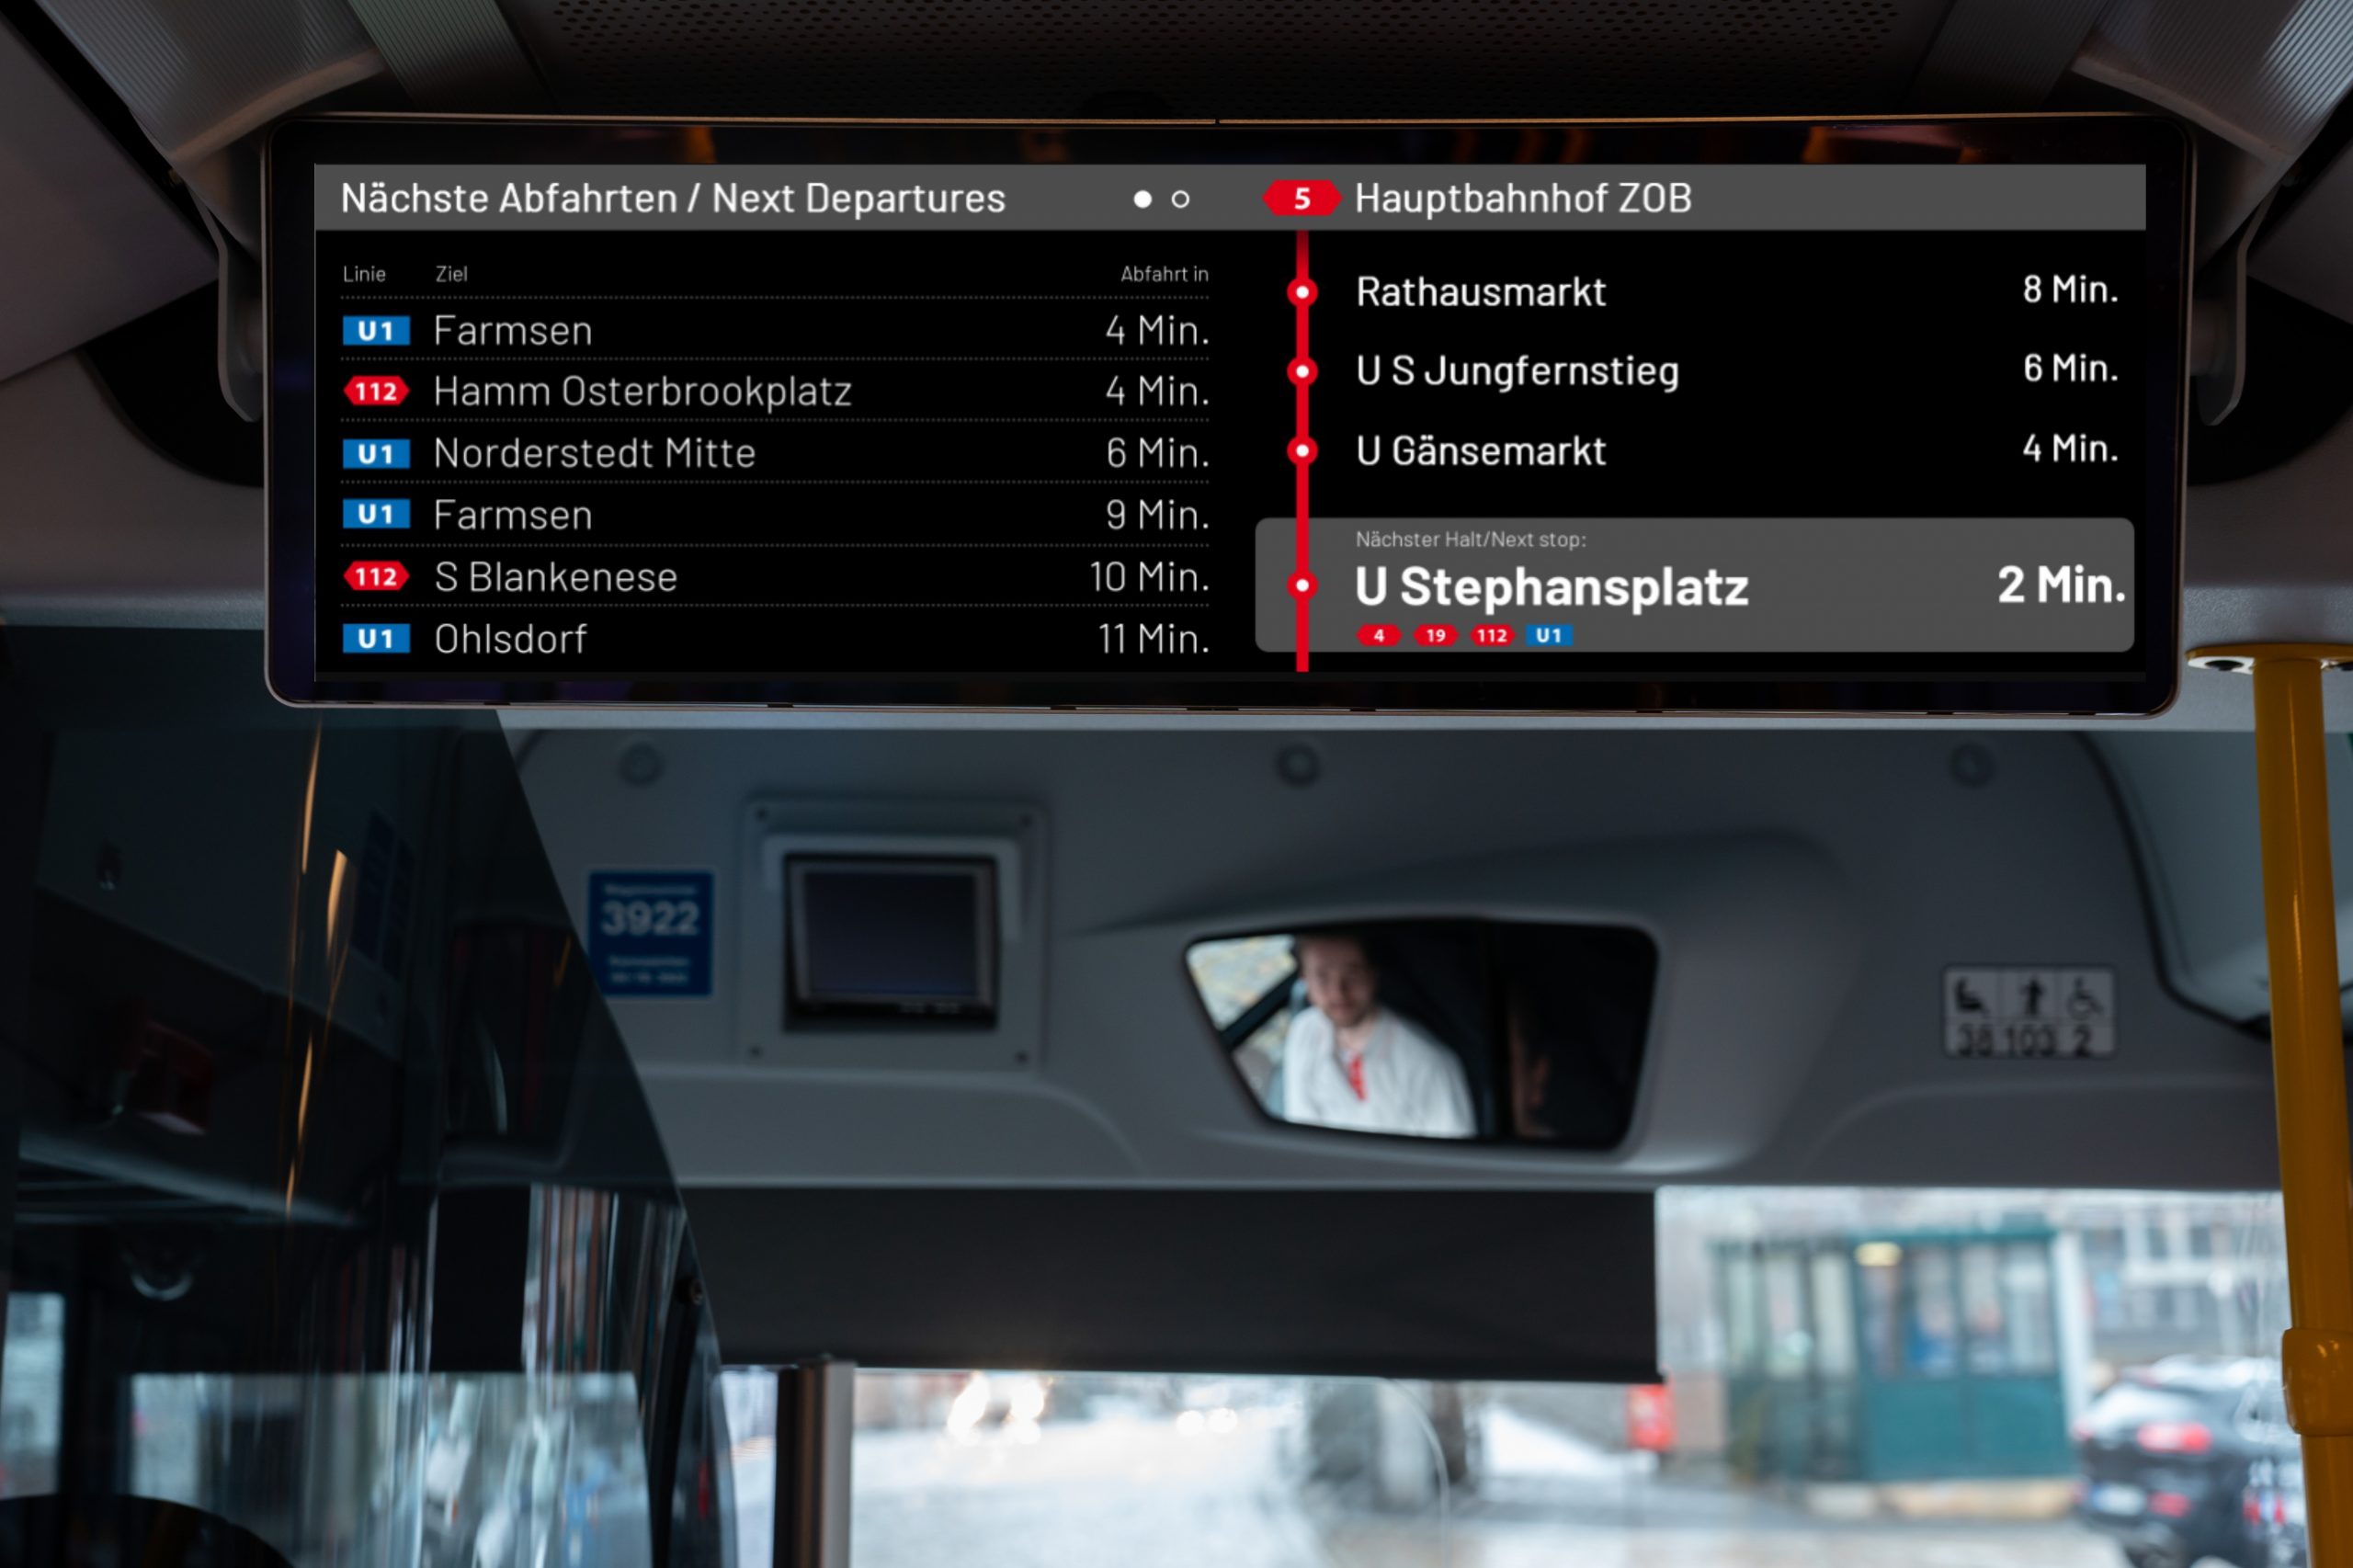 Auf den Doppel-Monitoren in den Bussen gibt es jetzt Informationen zu den nächsten Verbindungen.